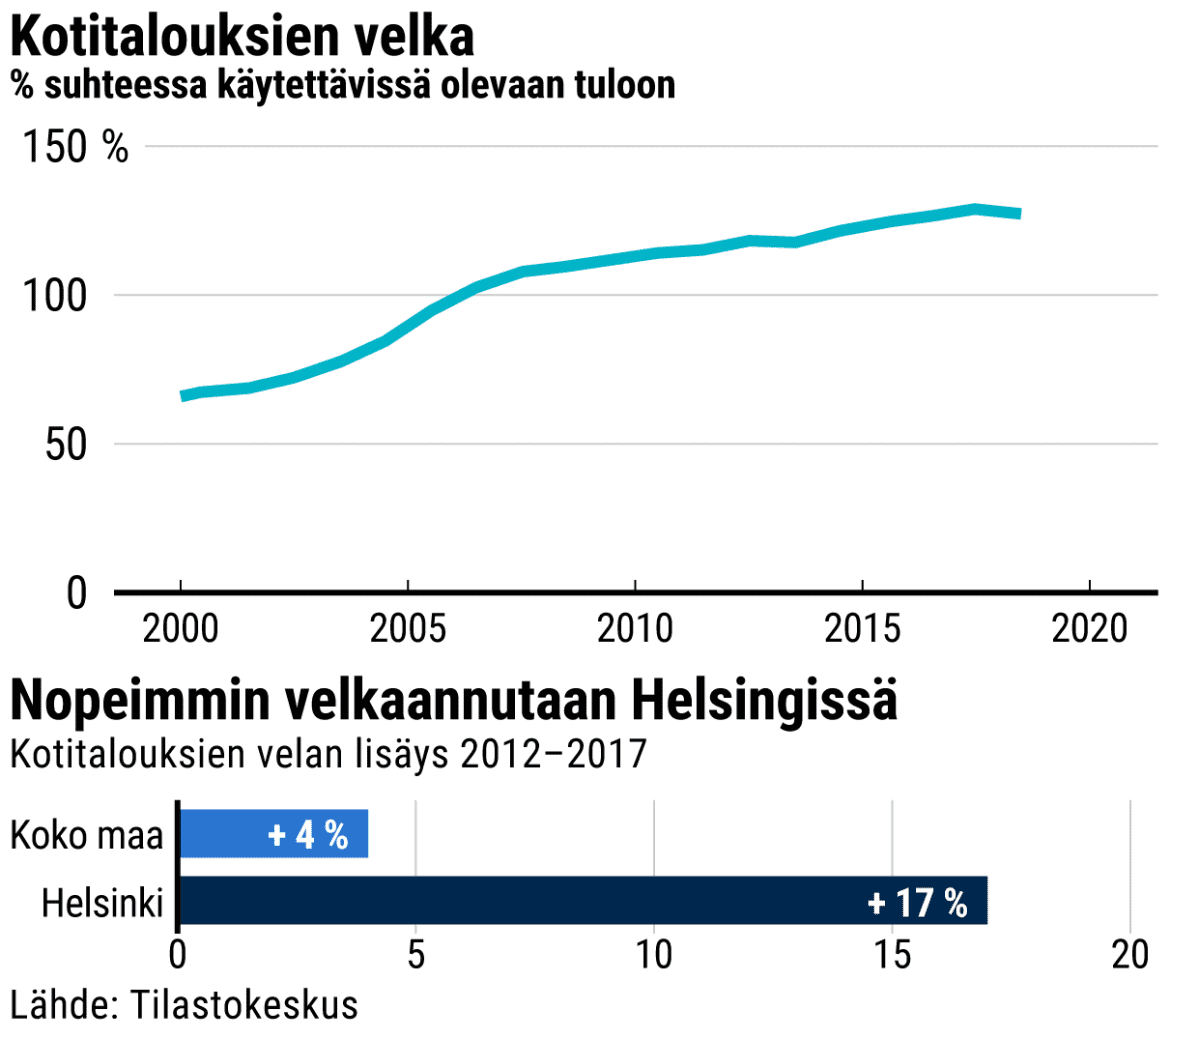 Kotitalouksien velka vuosina 2000-2018 -grafiikka. Koko maan (+4%) ja Helsingin (17%) kotitalouksien velan lisÃ¤ys vuosina 2012-2017.